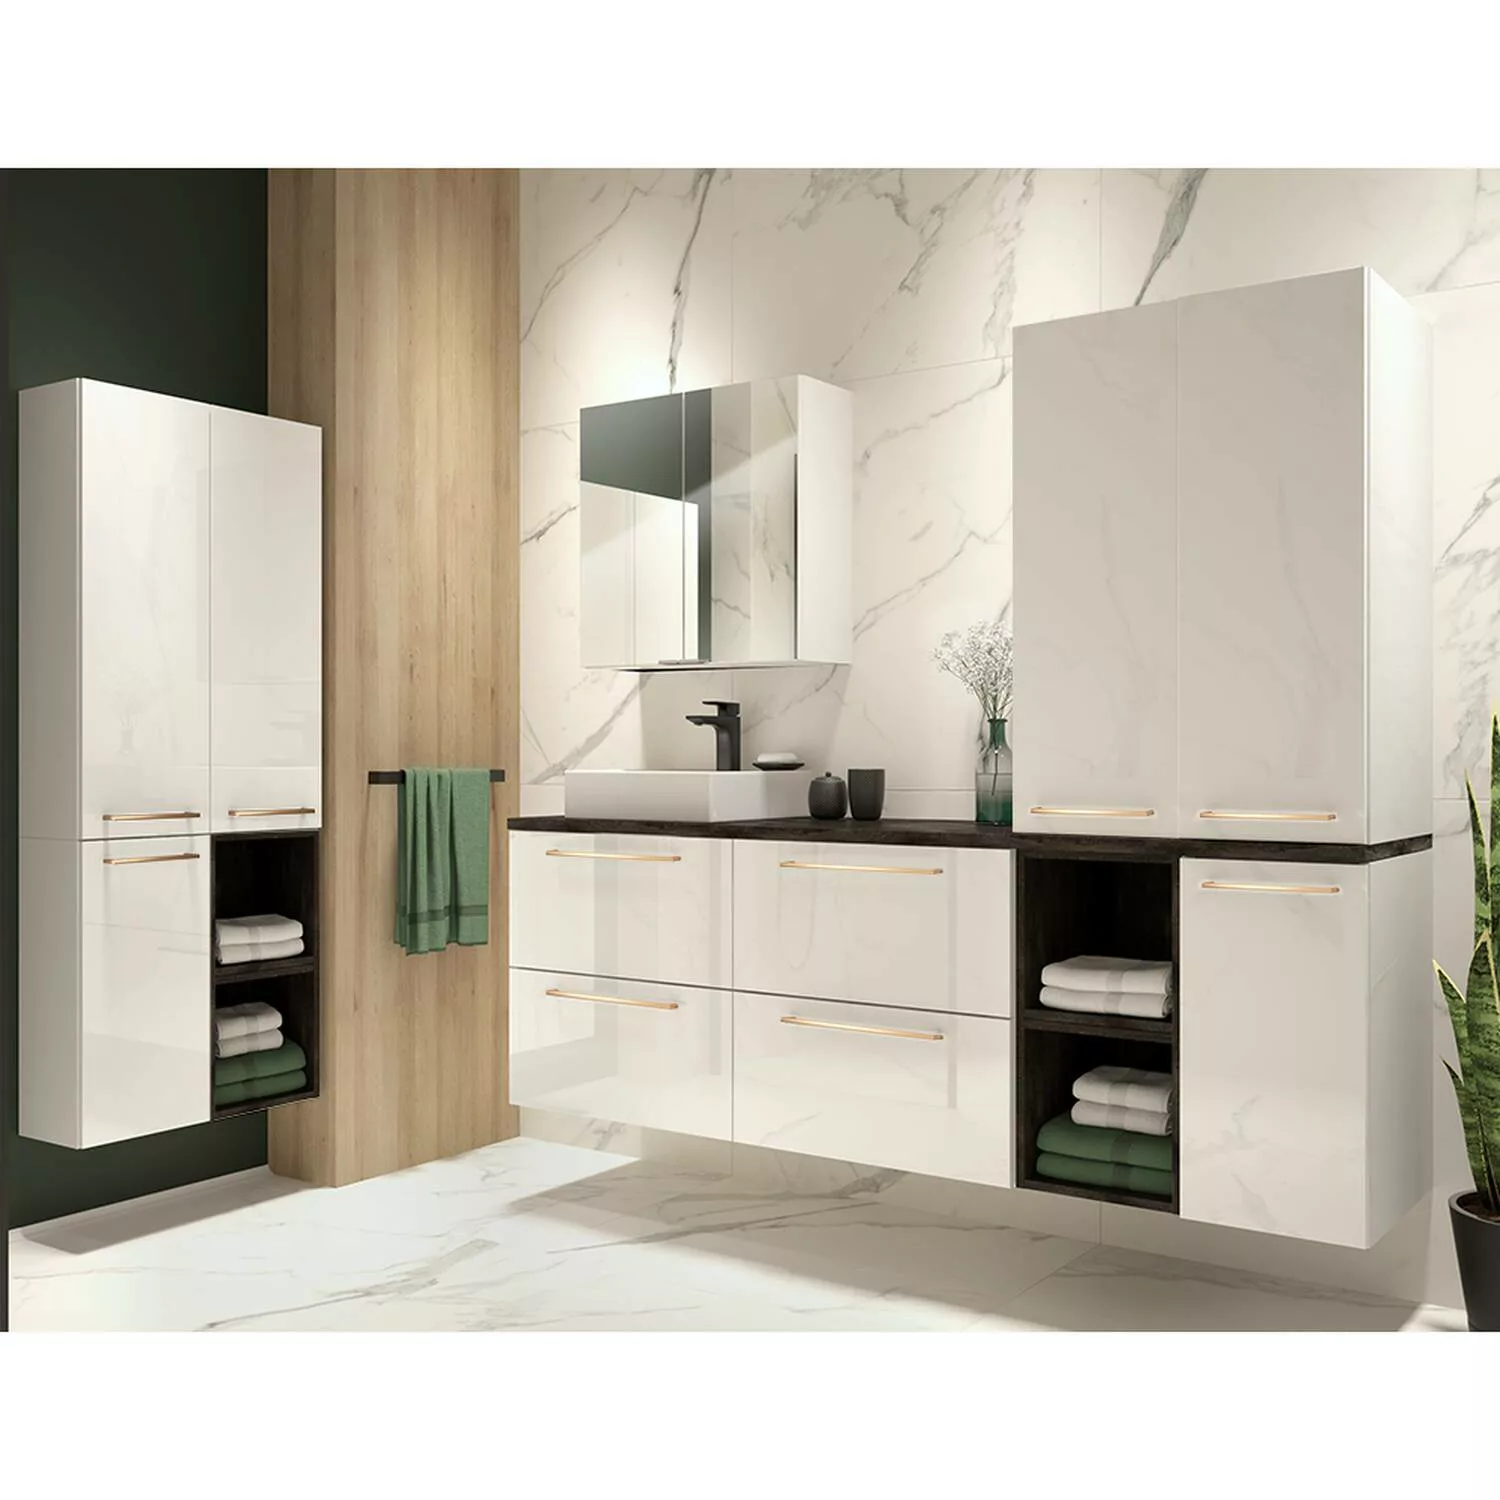 Lomadox Badezimmer Set in weiß Hochglanz lackiert mit Metallgriffen in kupf günstig online kaufen